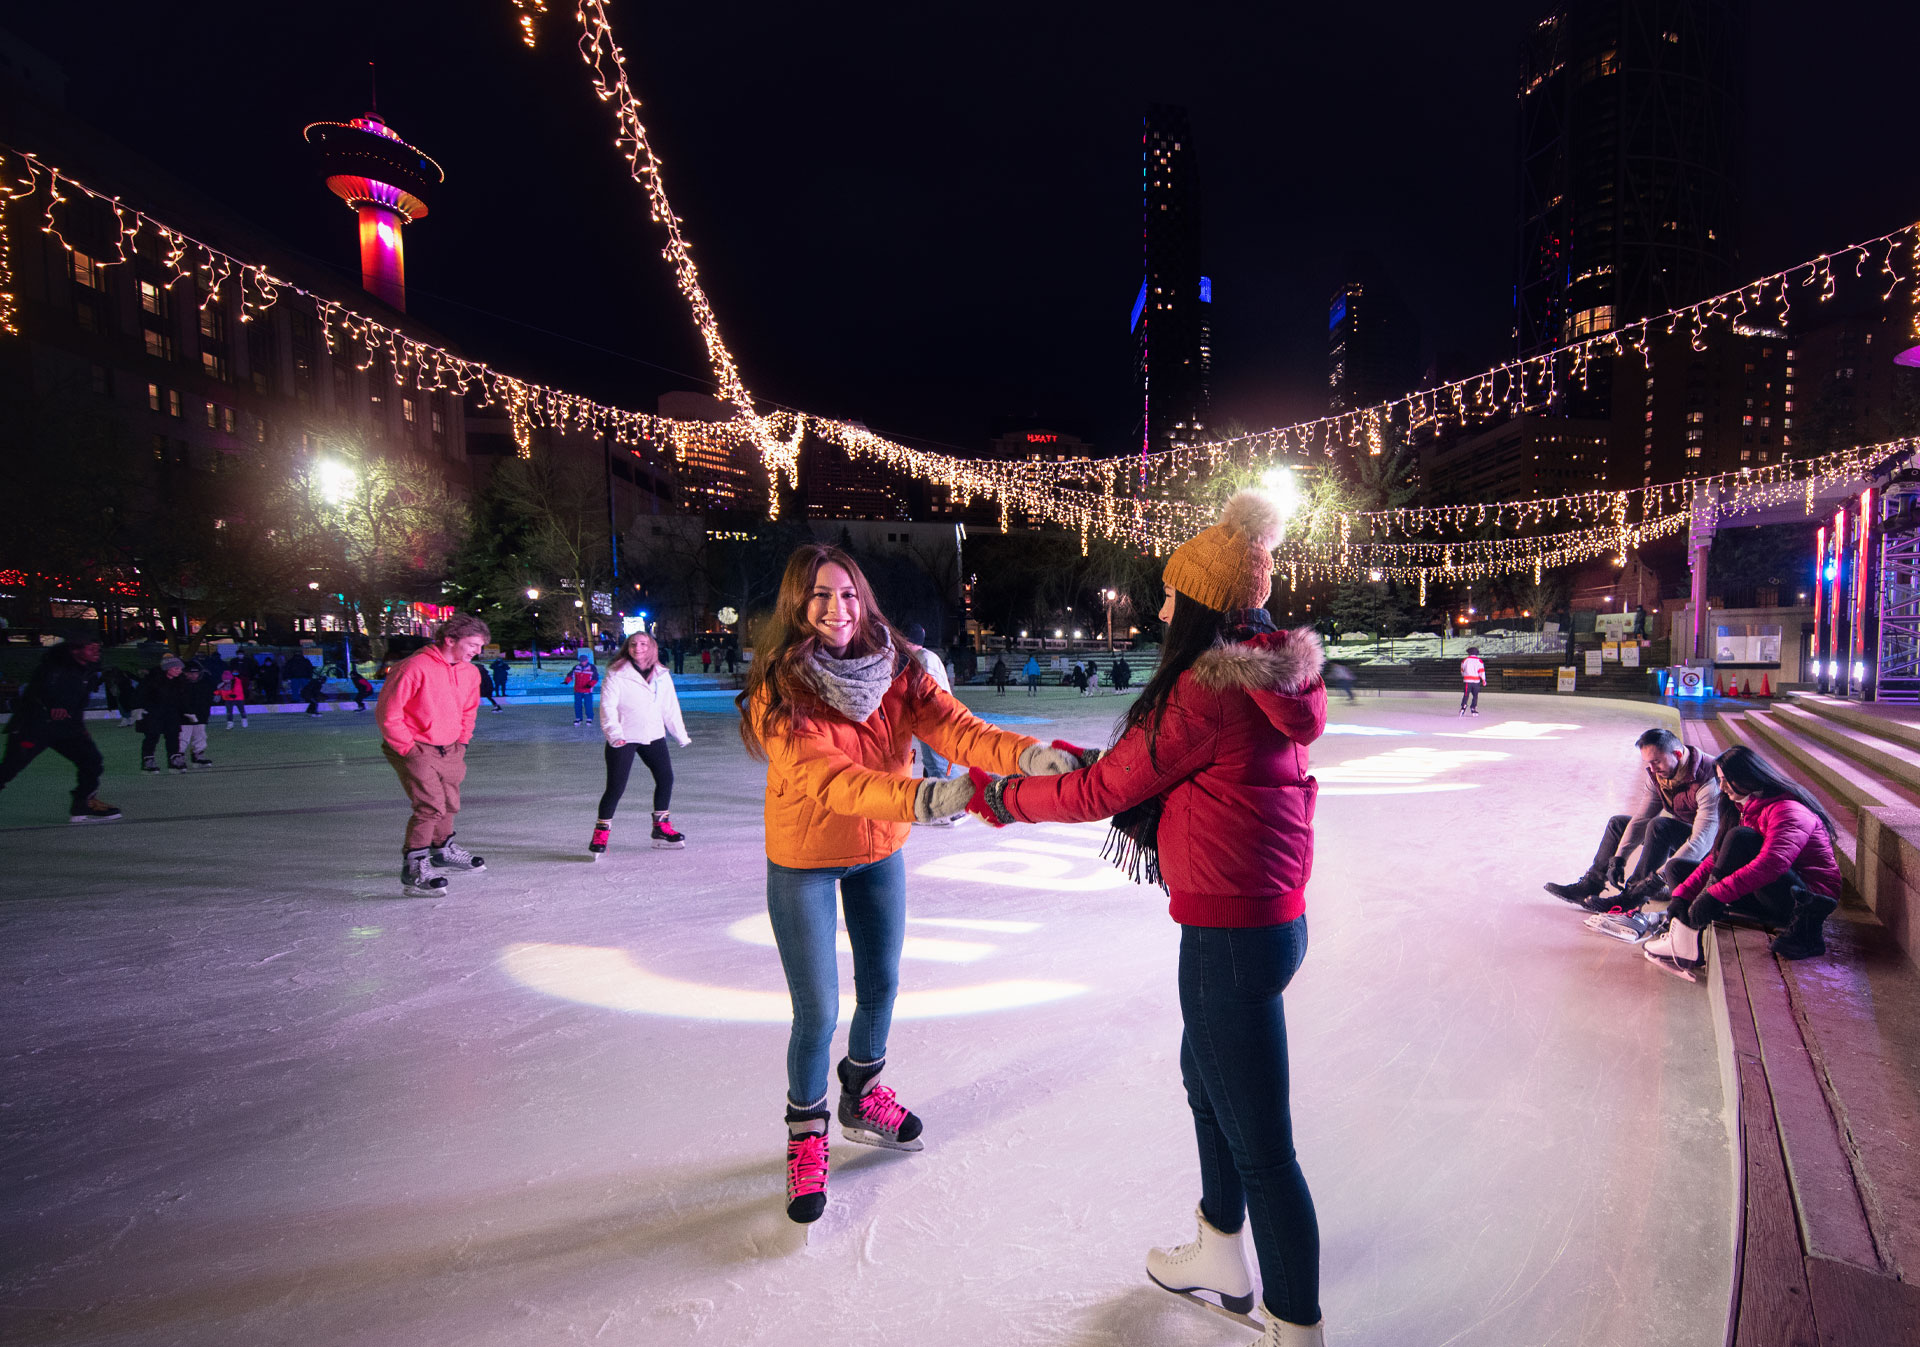 Ice skating in Olympic Plaza in Calgary